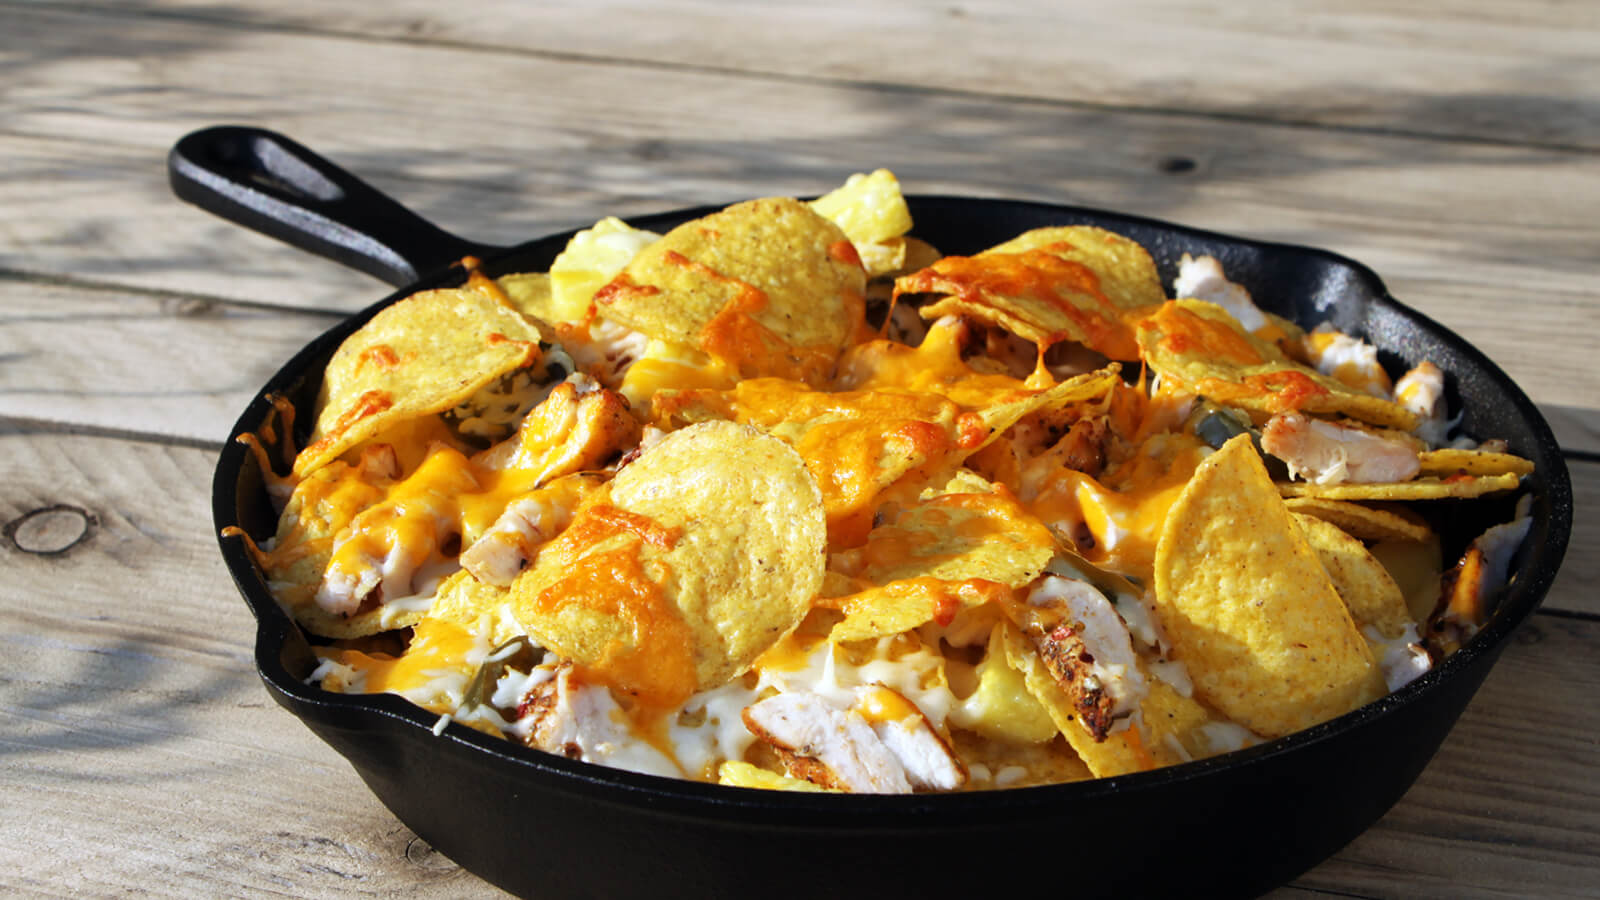 Nacho's van de BBQ zijn ideaal als voorgerecht. Ga voor dit nacho's recept met kip en ananas!